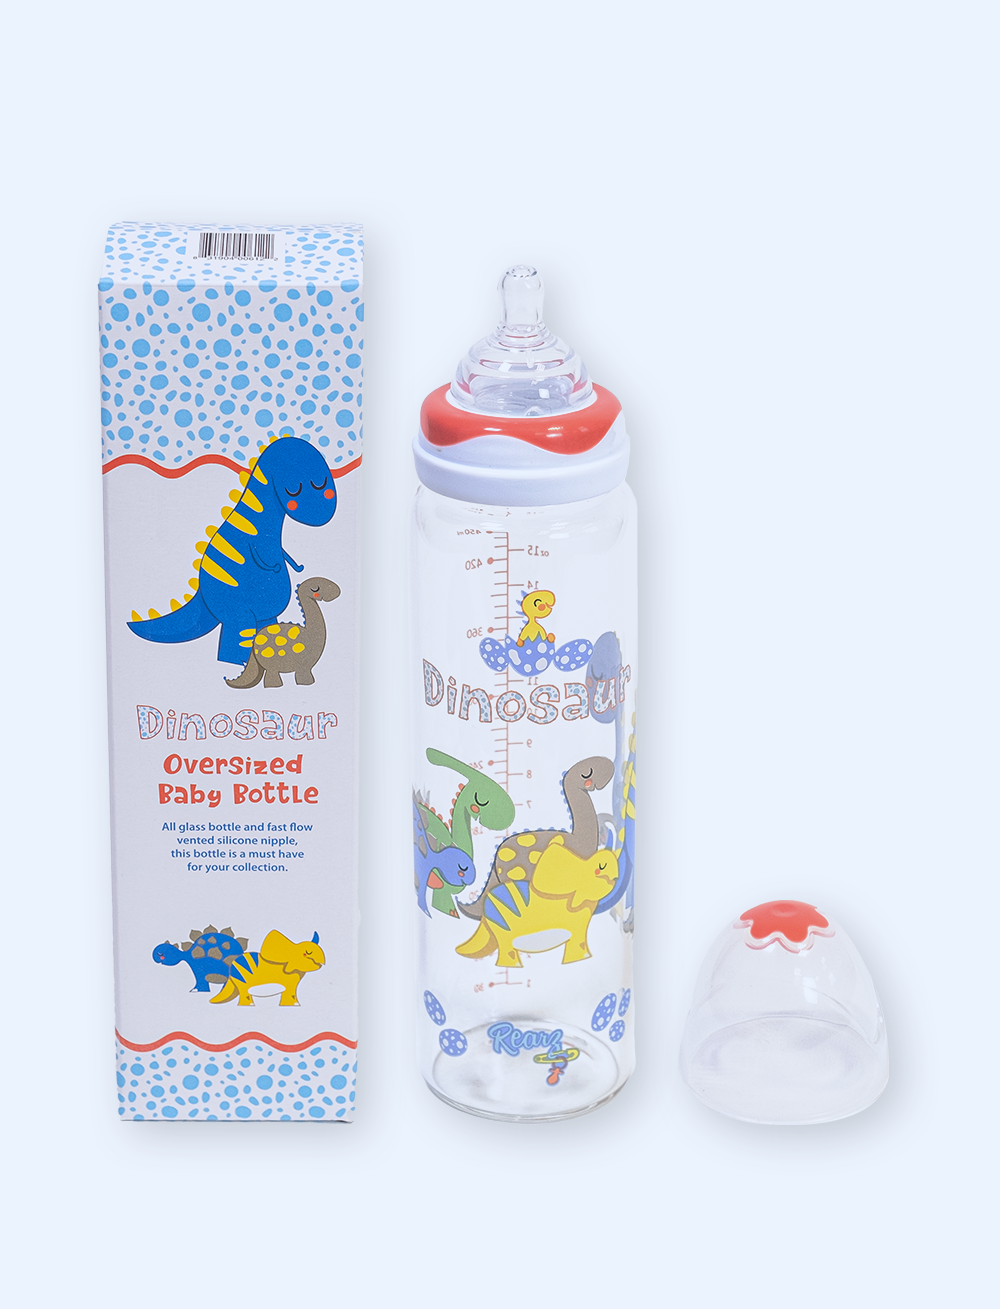 Rearz Dinosaur adult baby bottle 